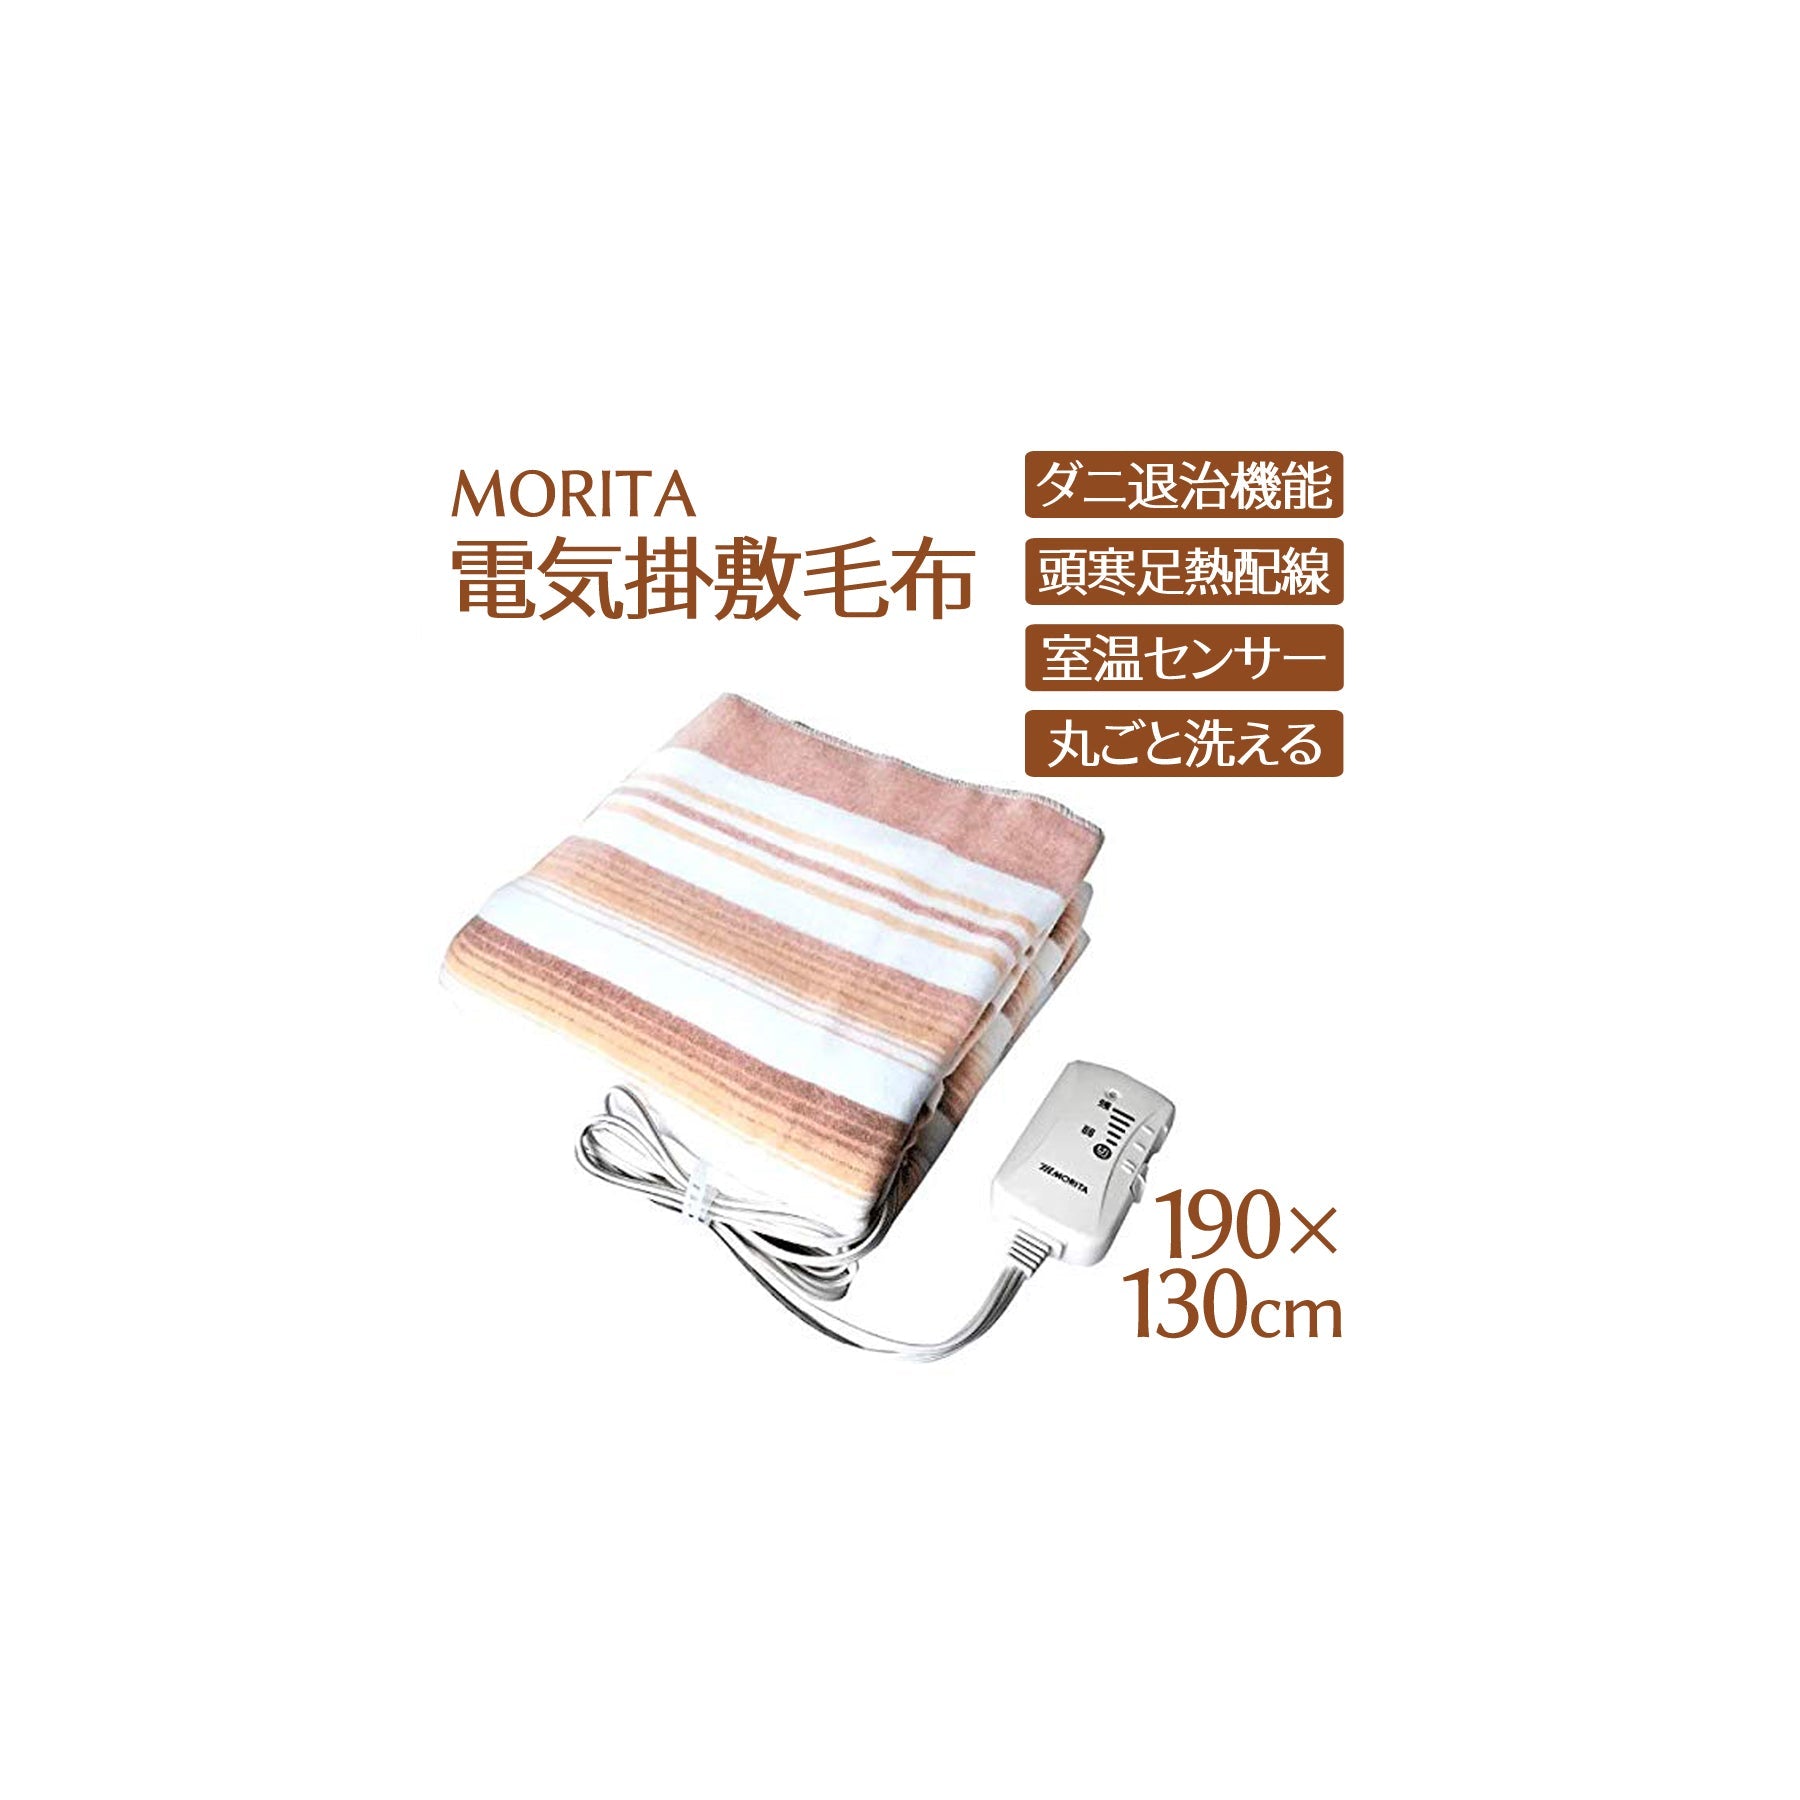 MORITA 洗える電気掛敷毛布 190×130cm 室温センサー付 ダニ退治